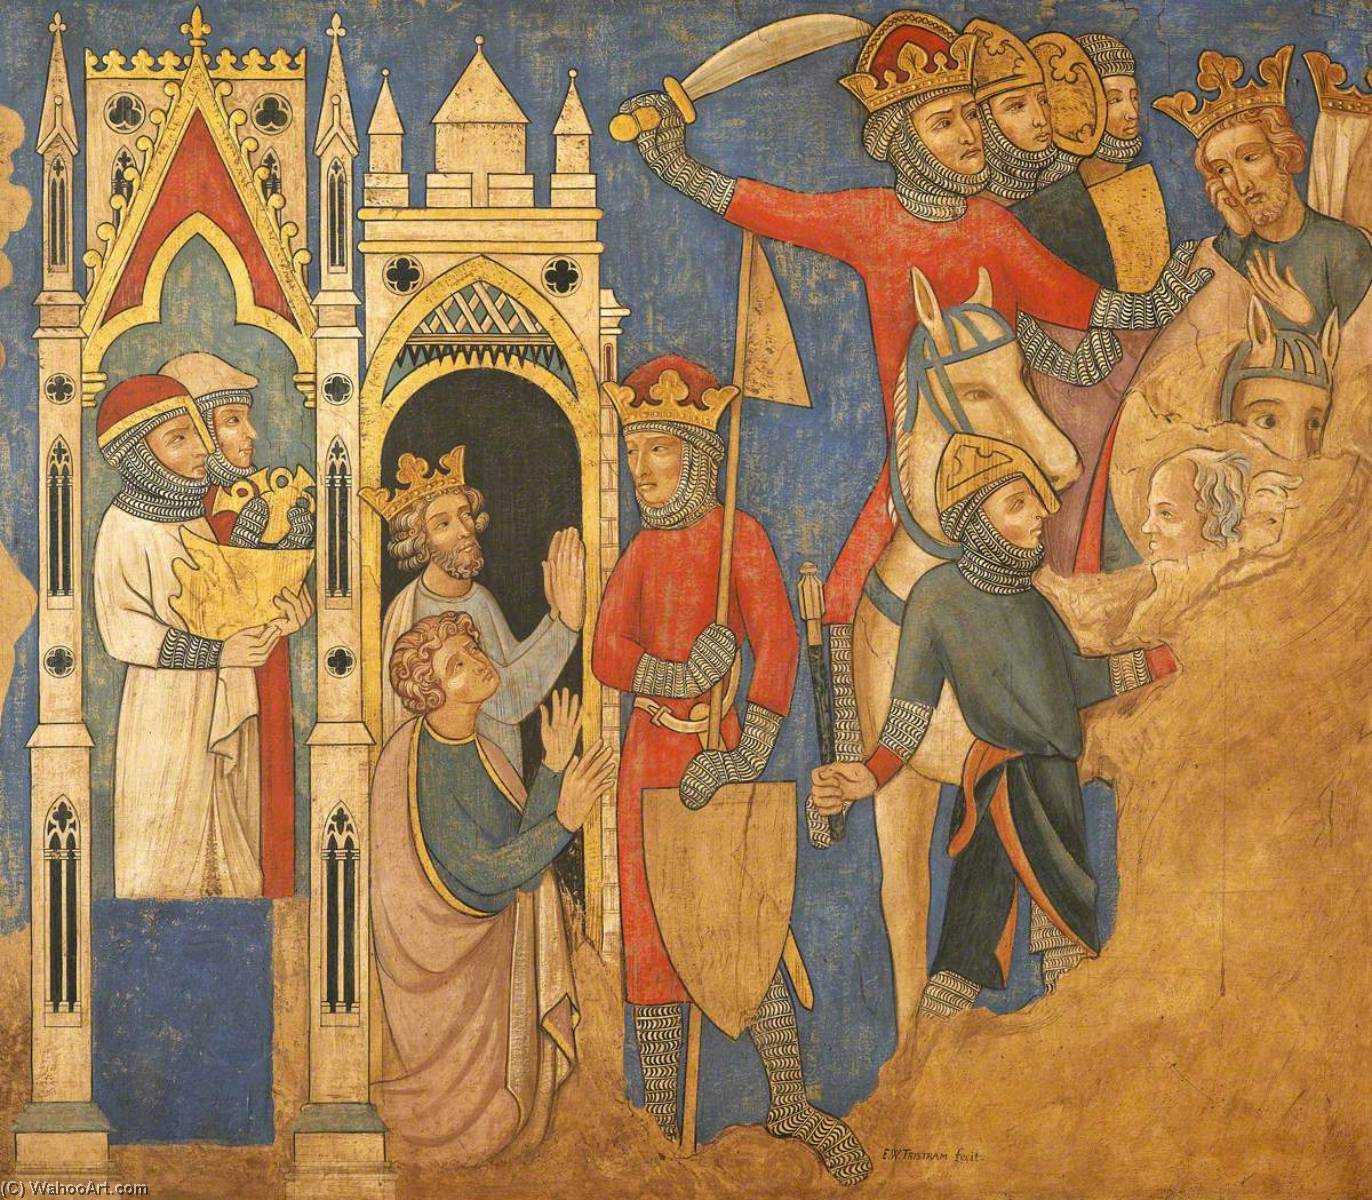 Живопись средневековья: тенденции и веяния, картины, художники